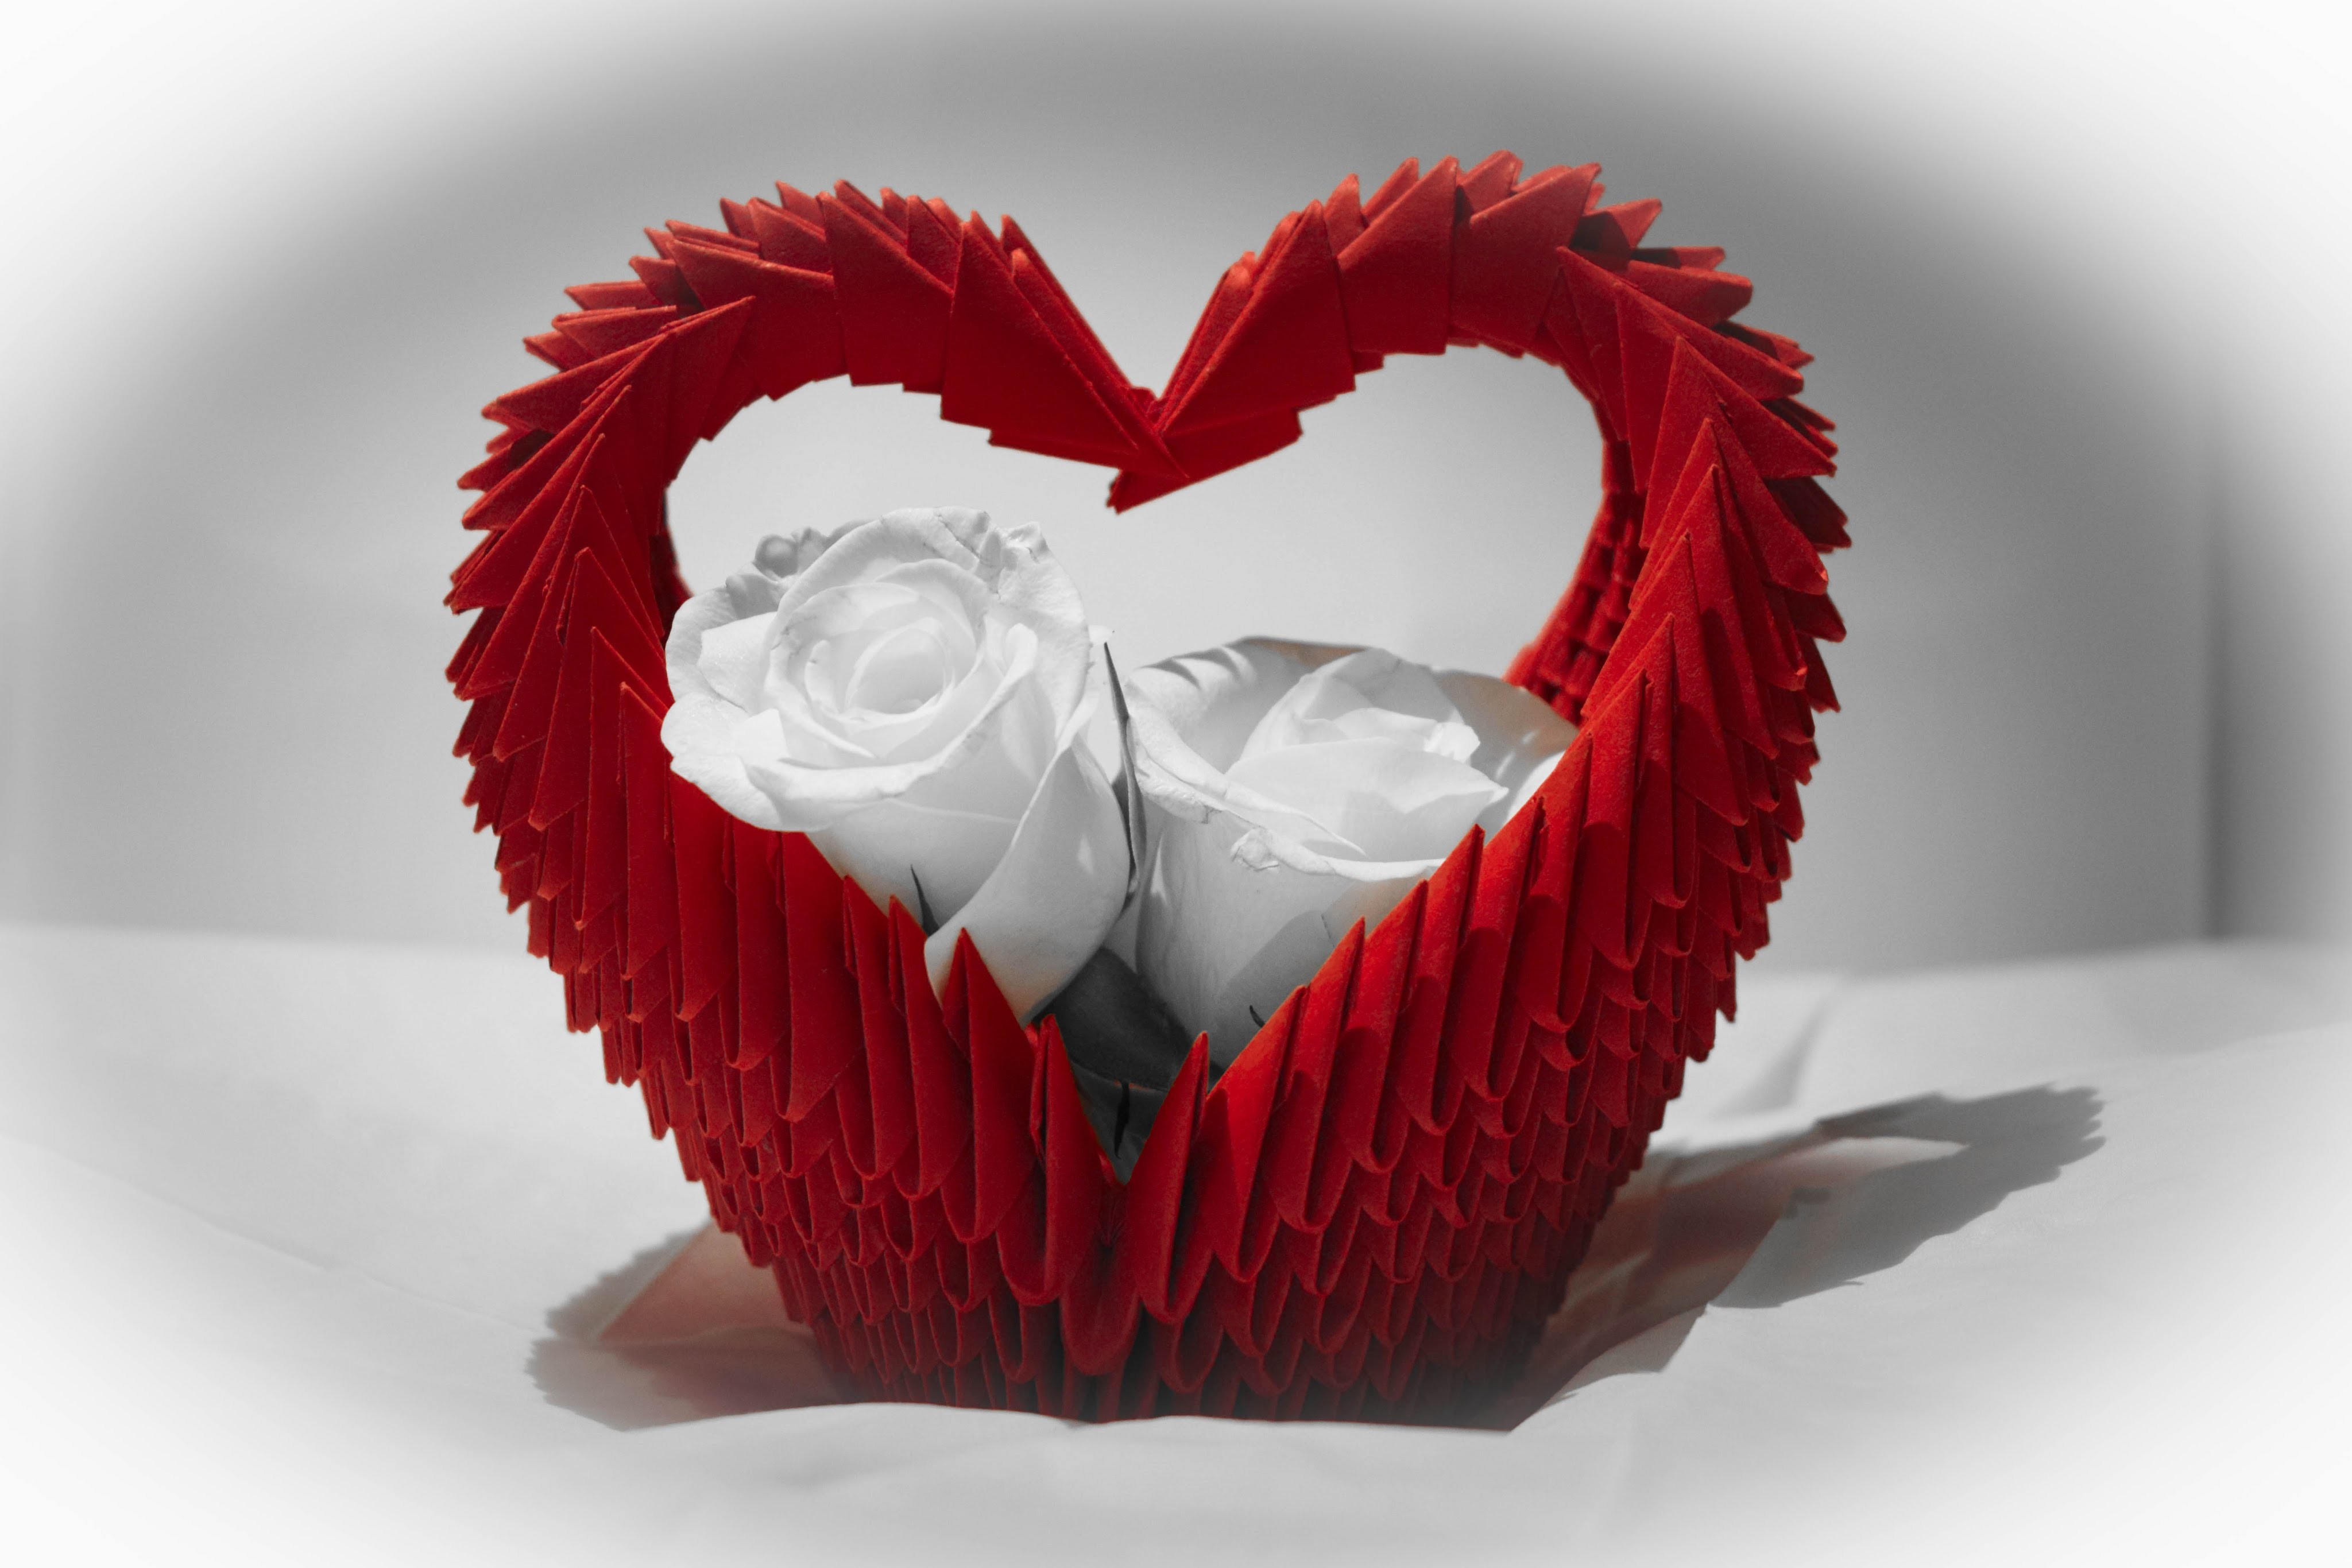 Koszyk serce origami modułowe 3D tutorial jak zrobić